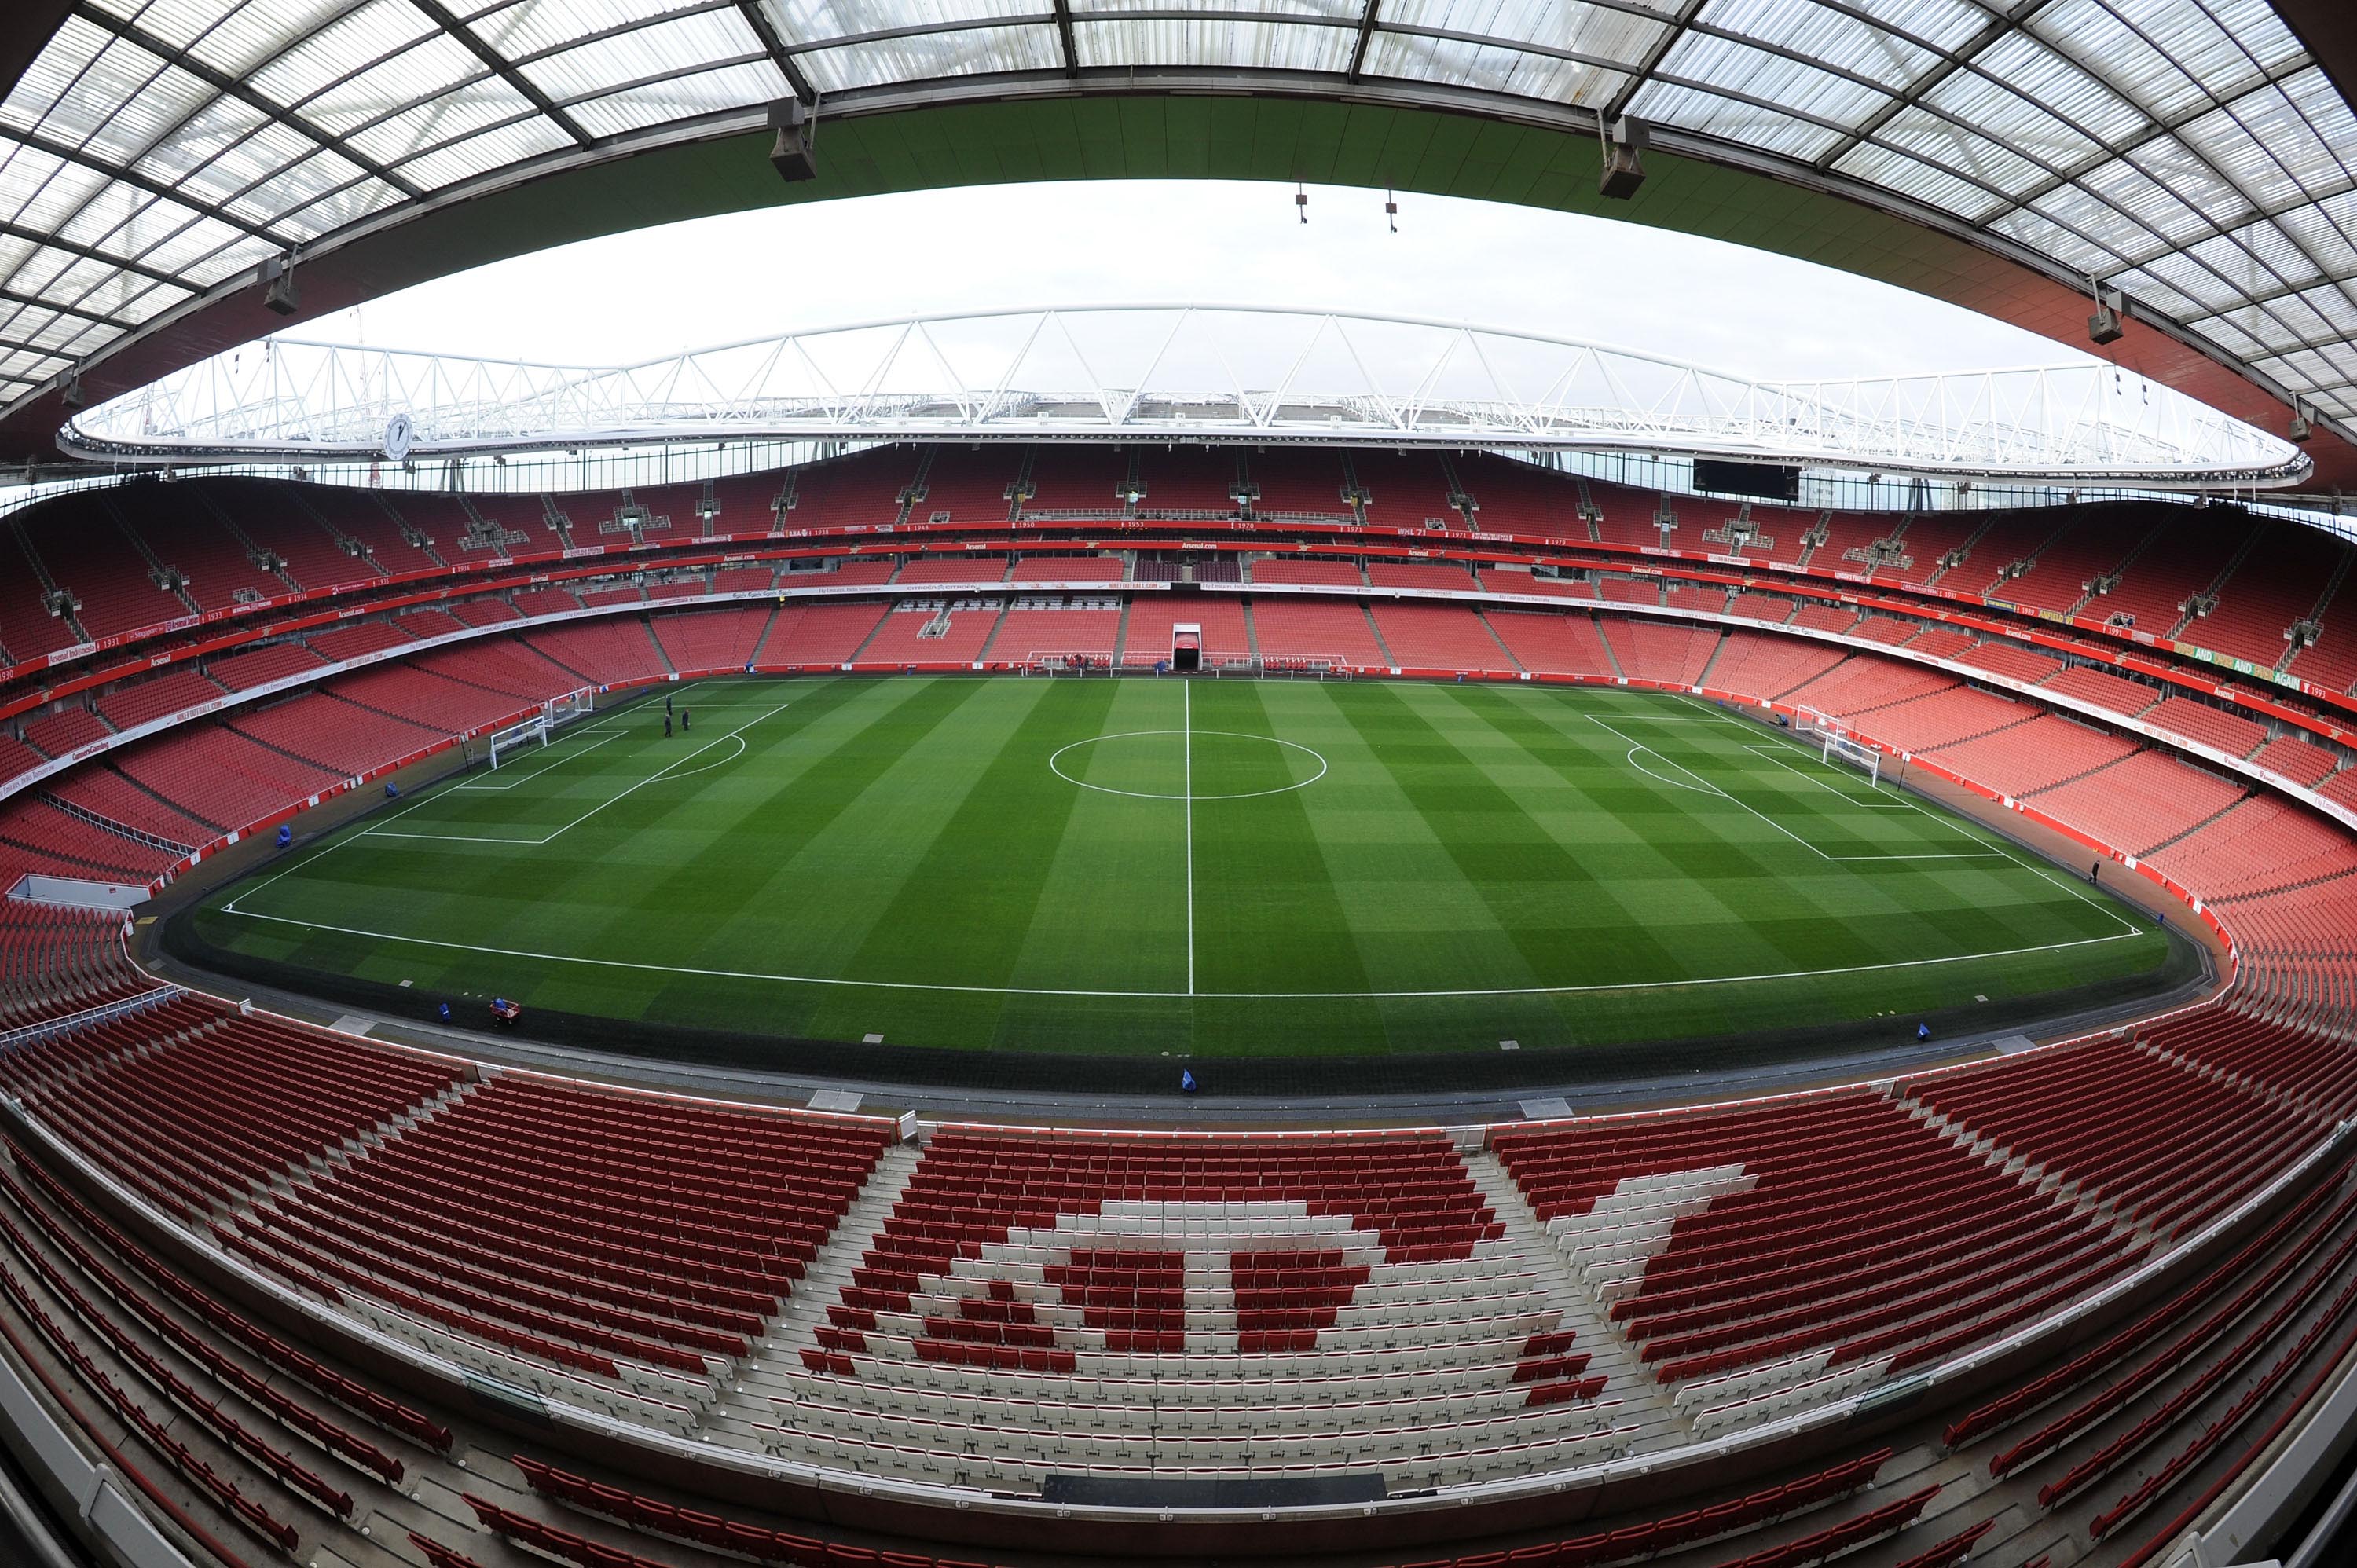 Visit The Emirates Stadium The Headquarters of Arsenal FC